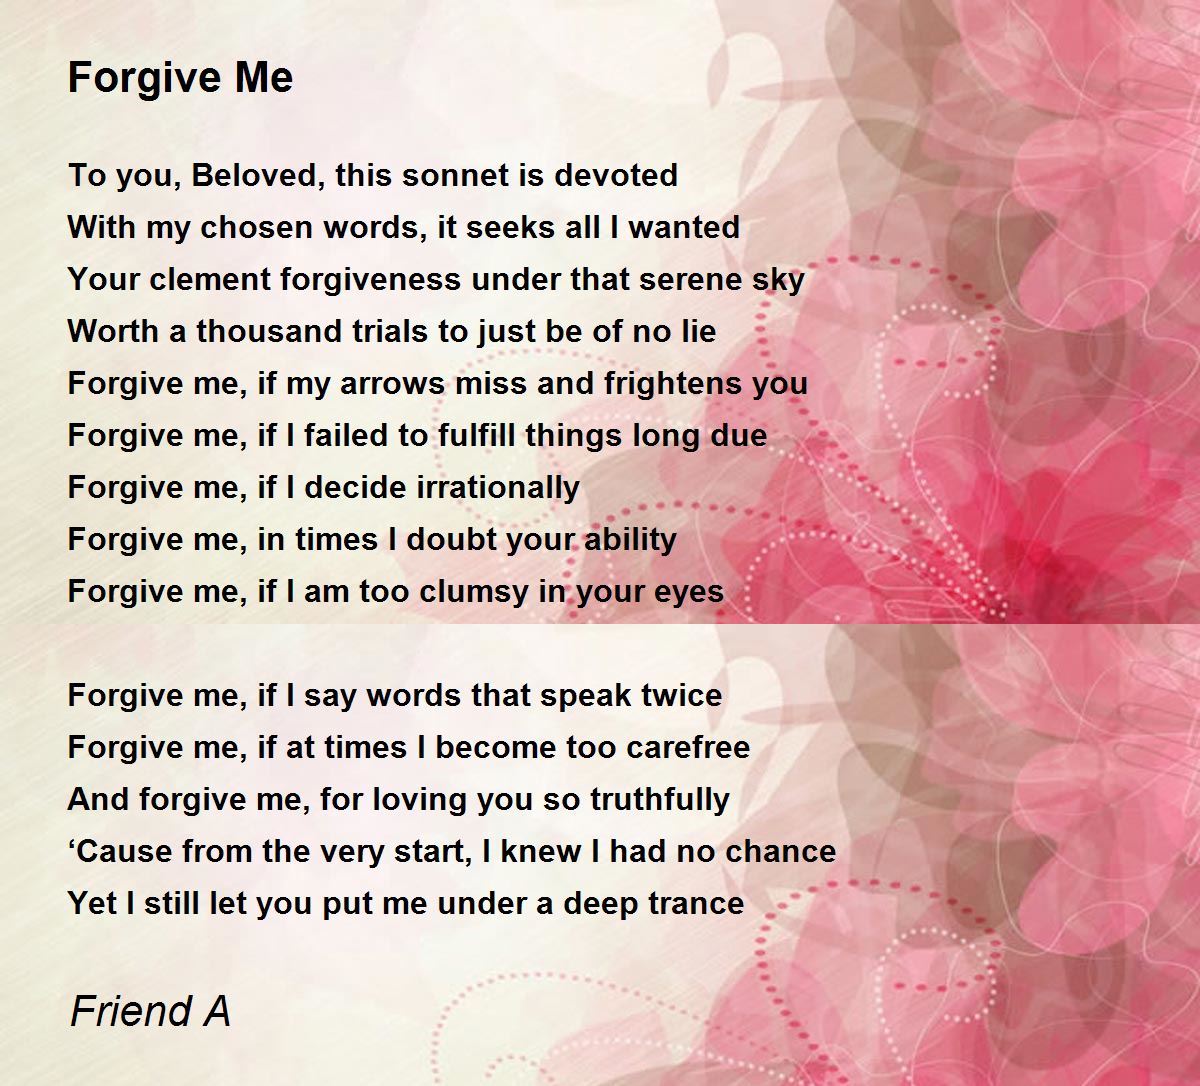 forgive me poems